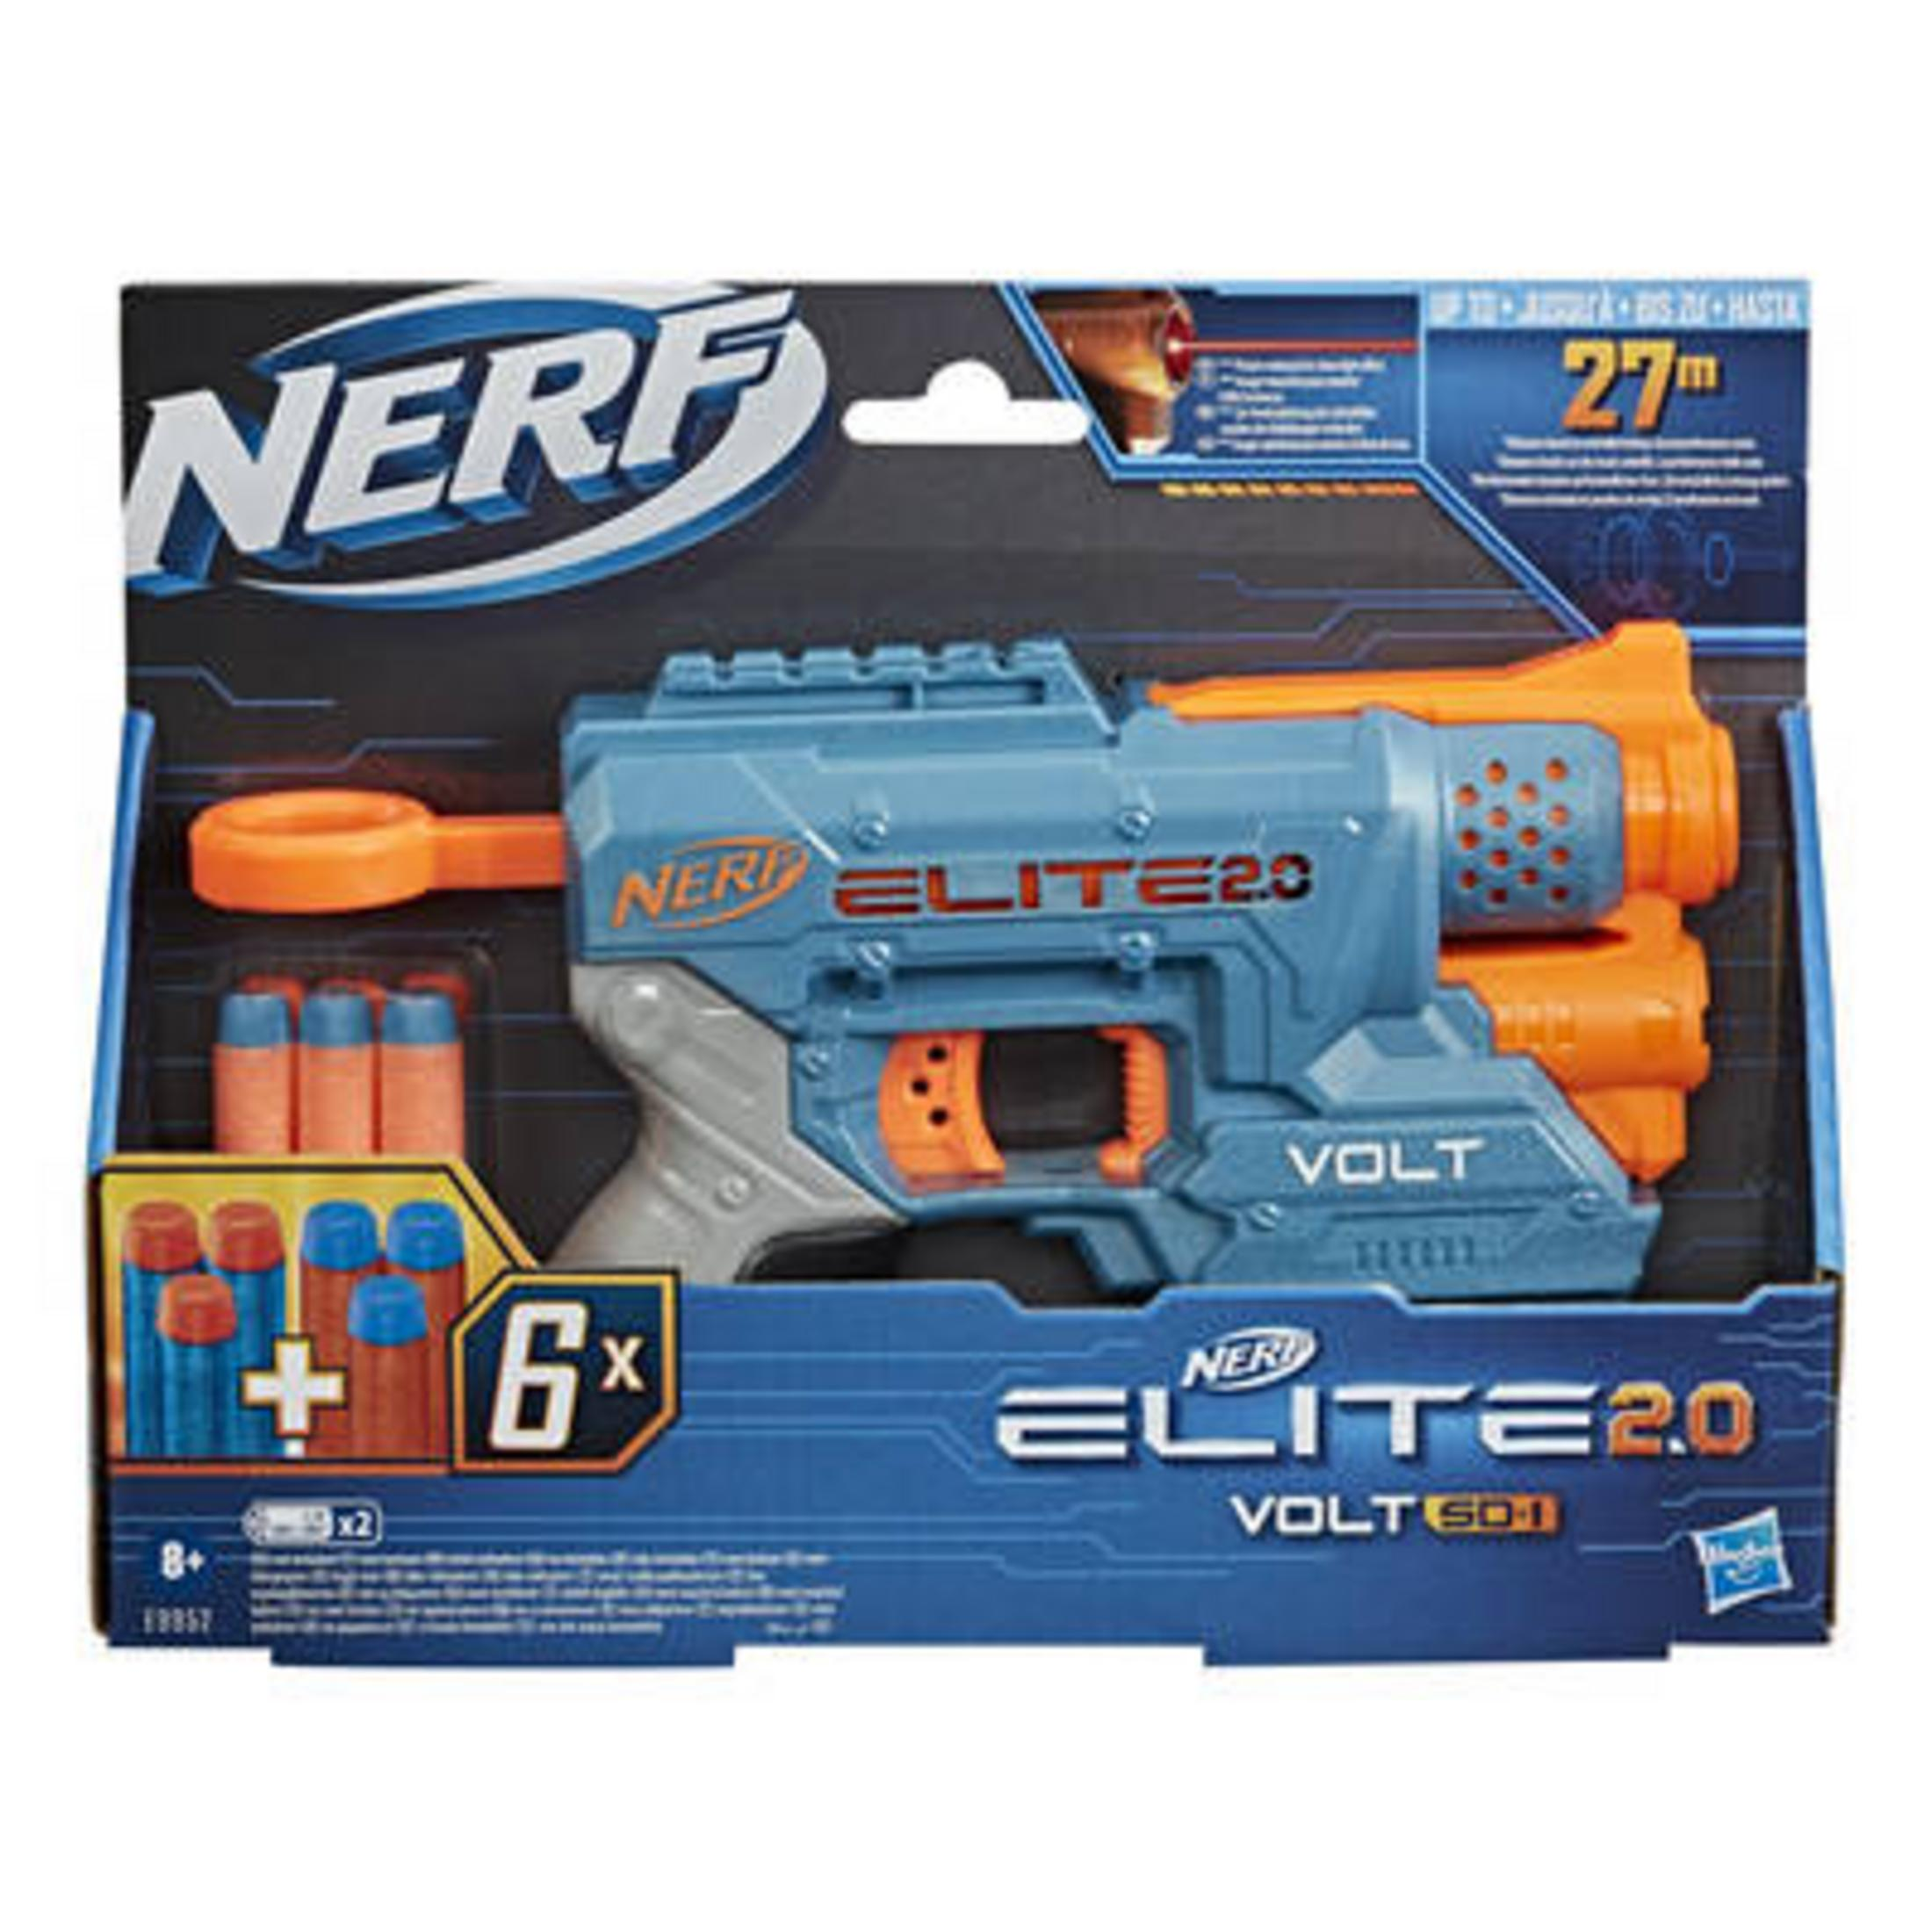 NERF E9952EU4 NERF ELITE 2.0 Mehrfarbig 1 VOLT Blaster SD